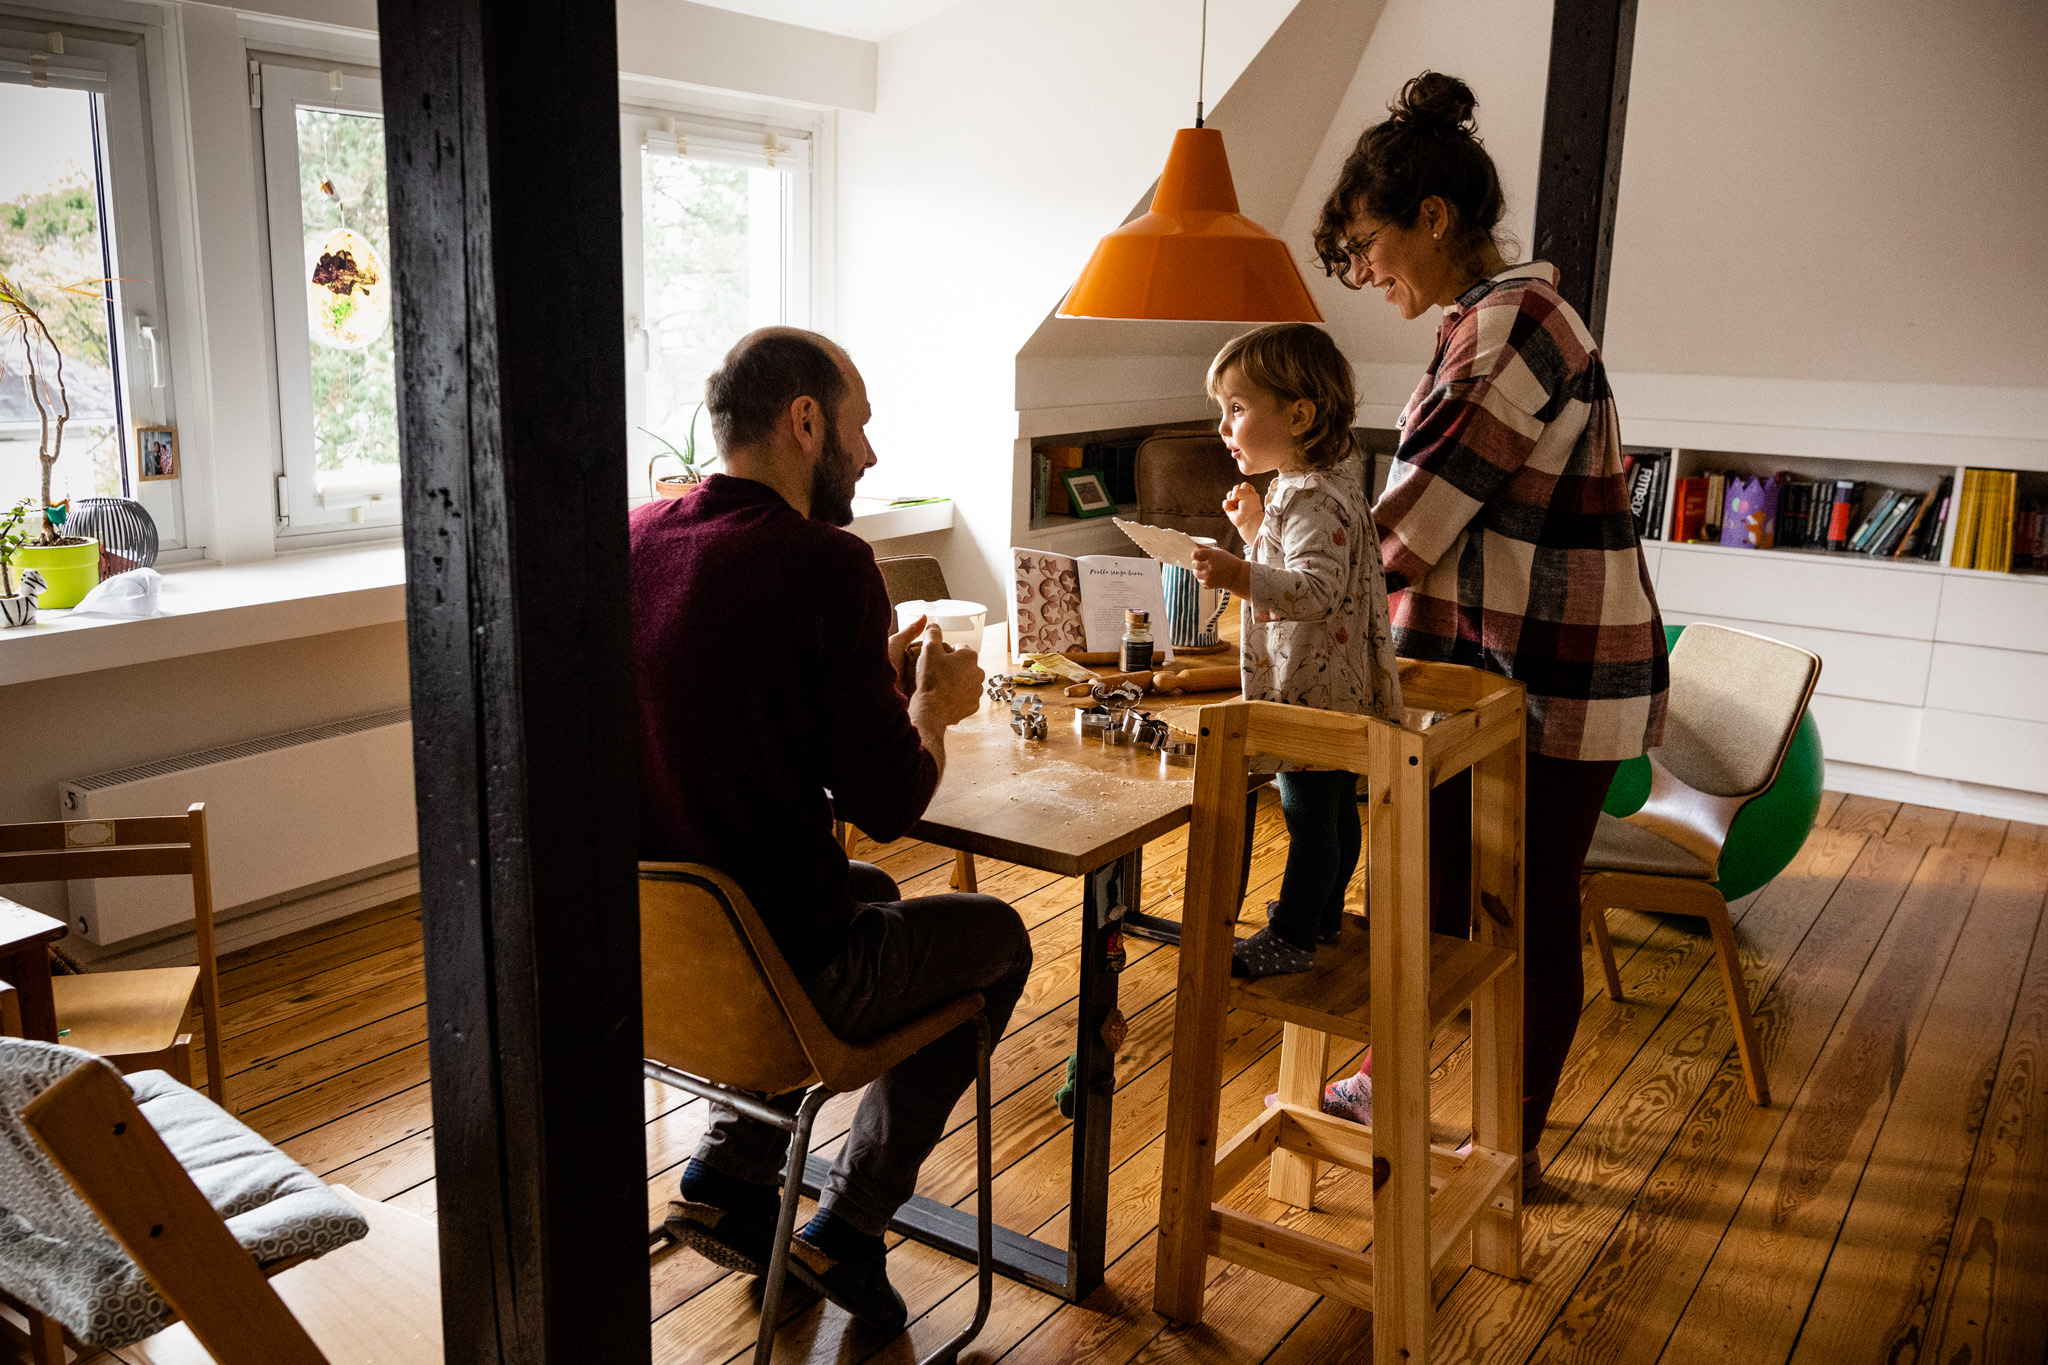 Familienreportage in Hamburg: Vater, Mutter und Tochter im Wohnzimmer beim gemeinsamen Backen